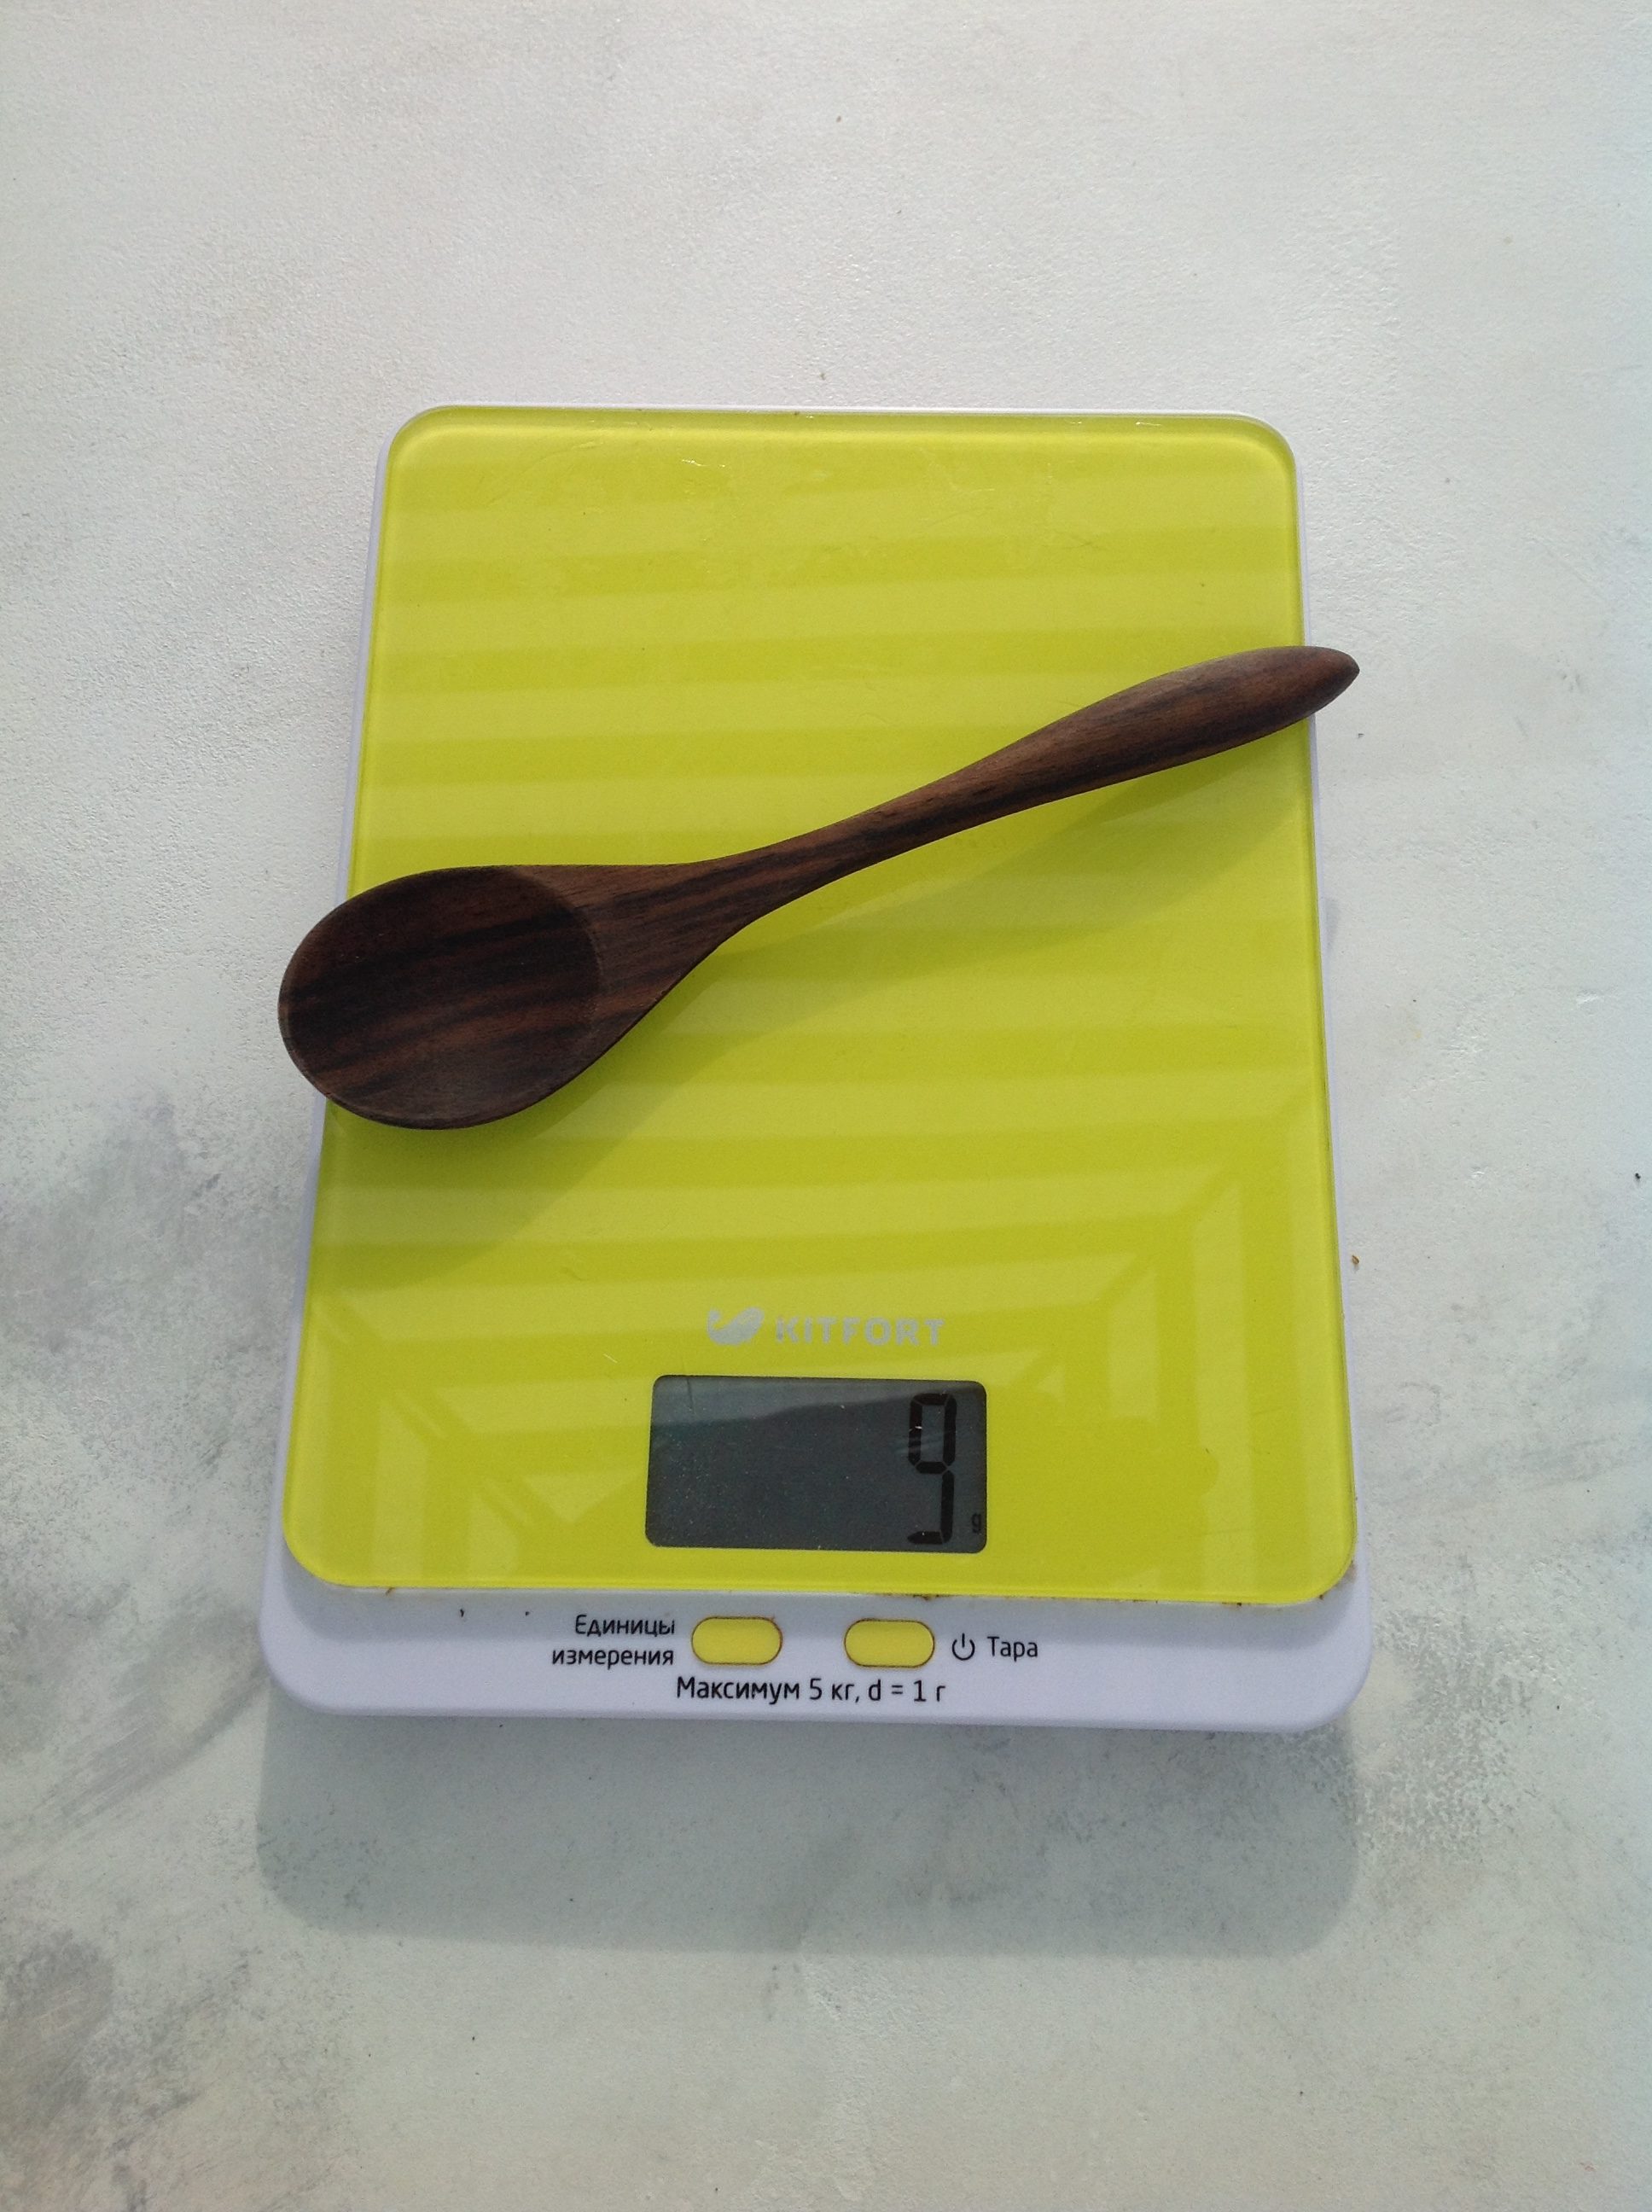 Berapa berat sendok kayu ukuran sedang?